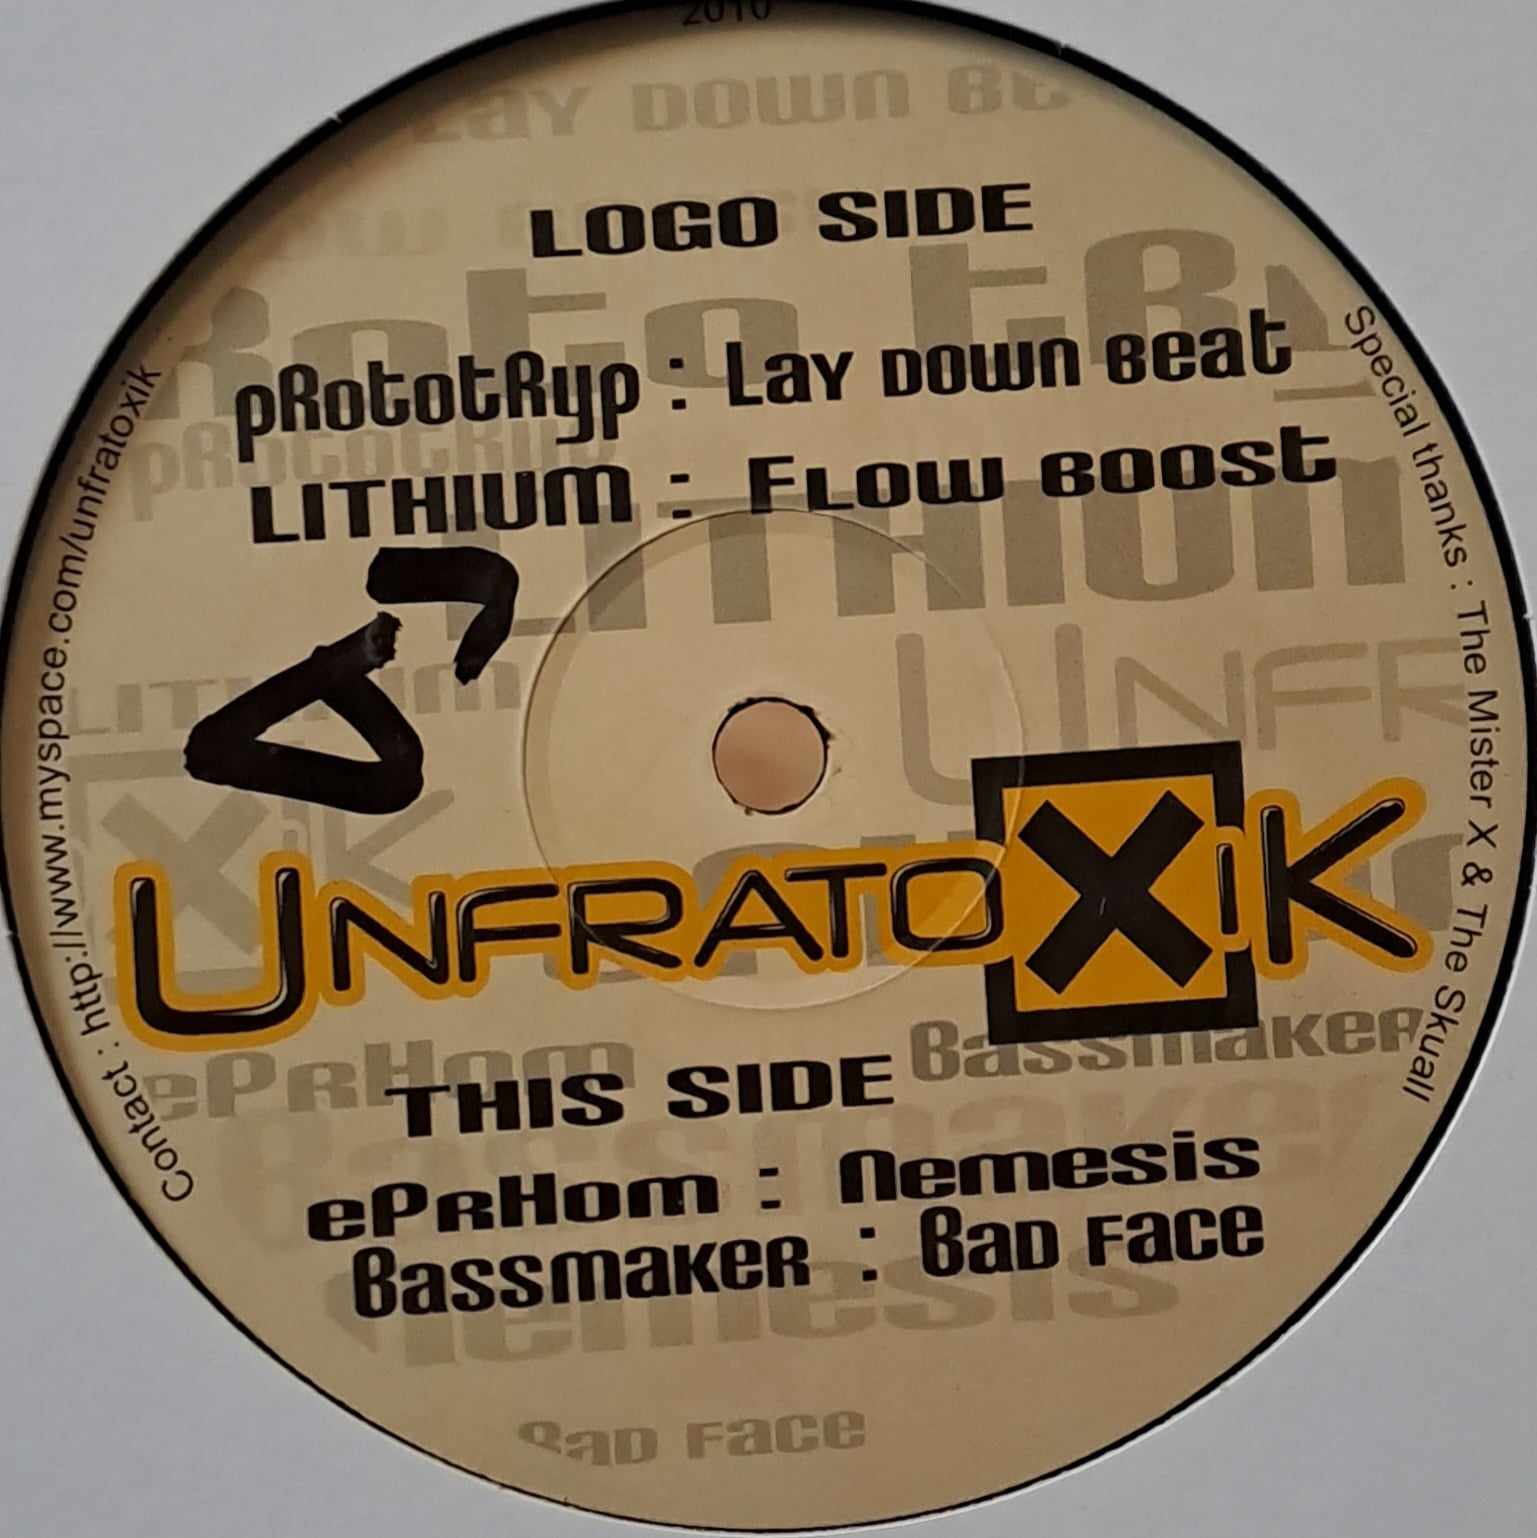 Unfratoxik 01 - vinyle tribecore